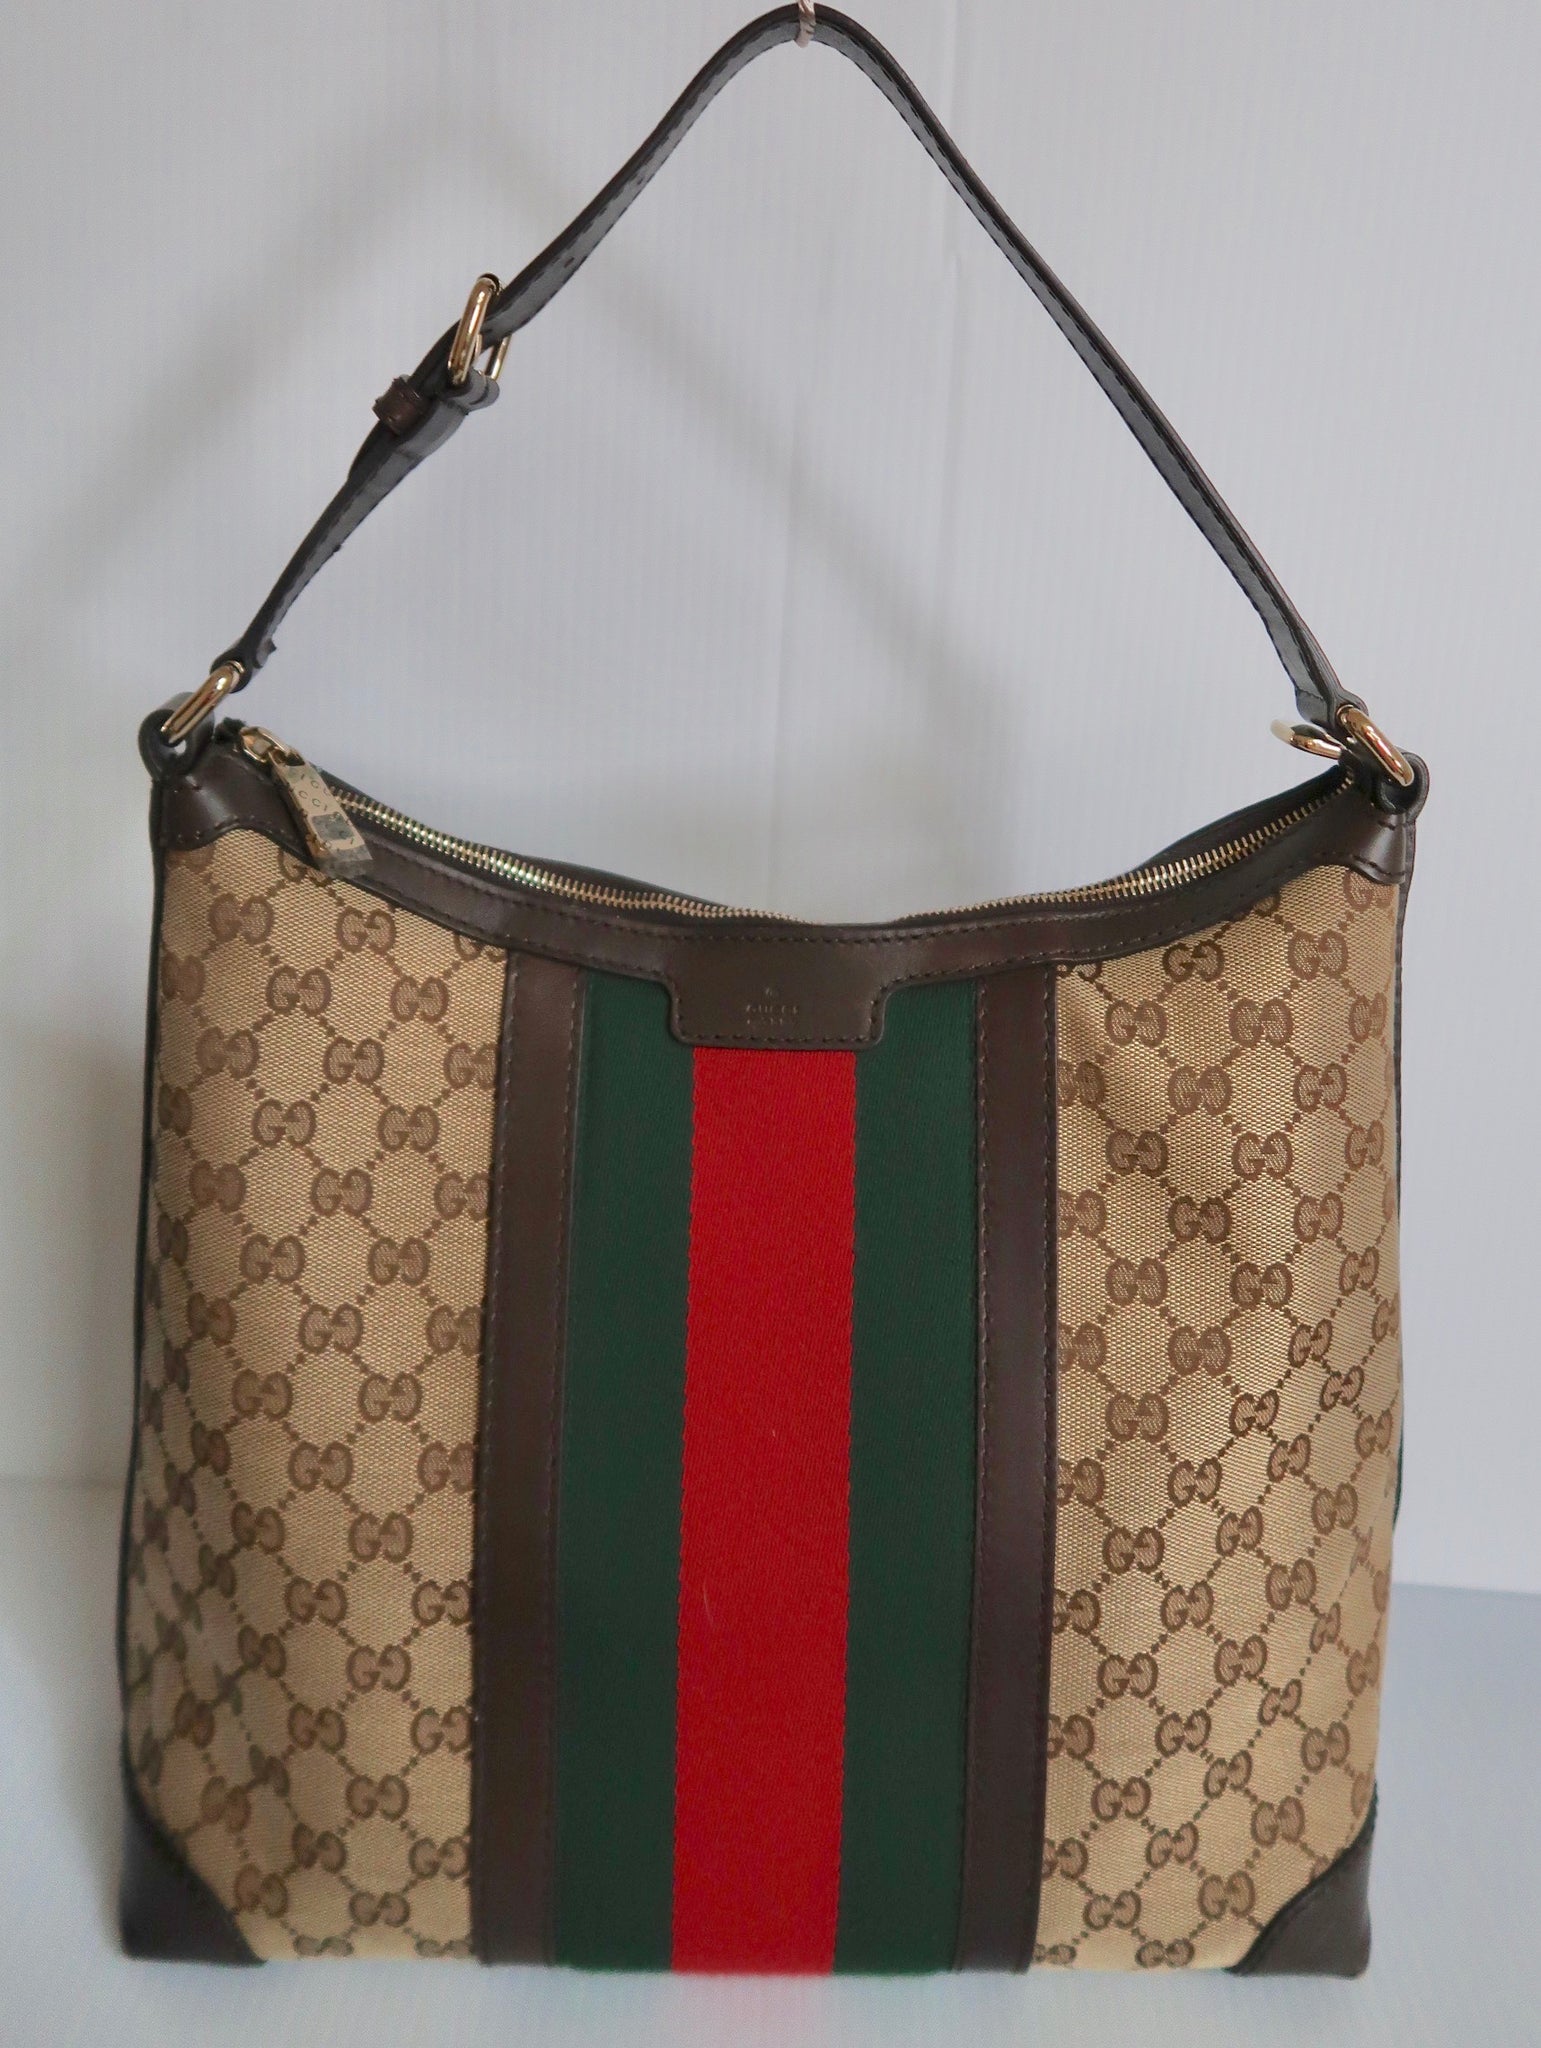 Gucci Hobo Vintage Handbags